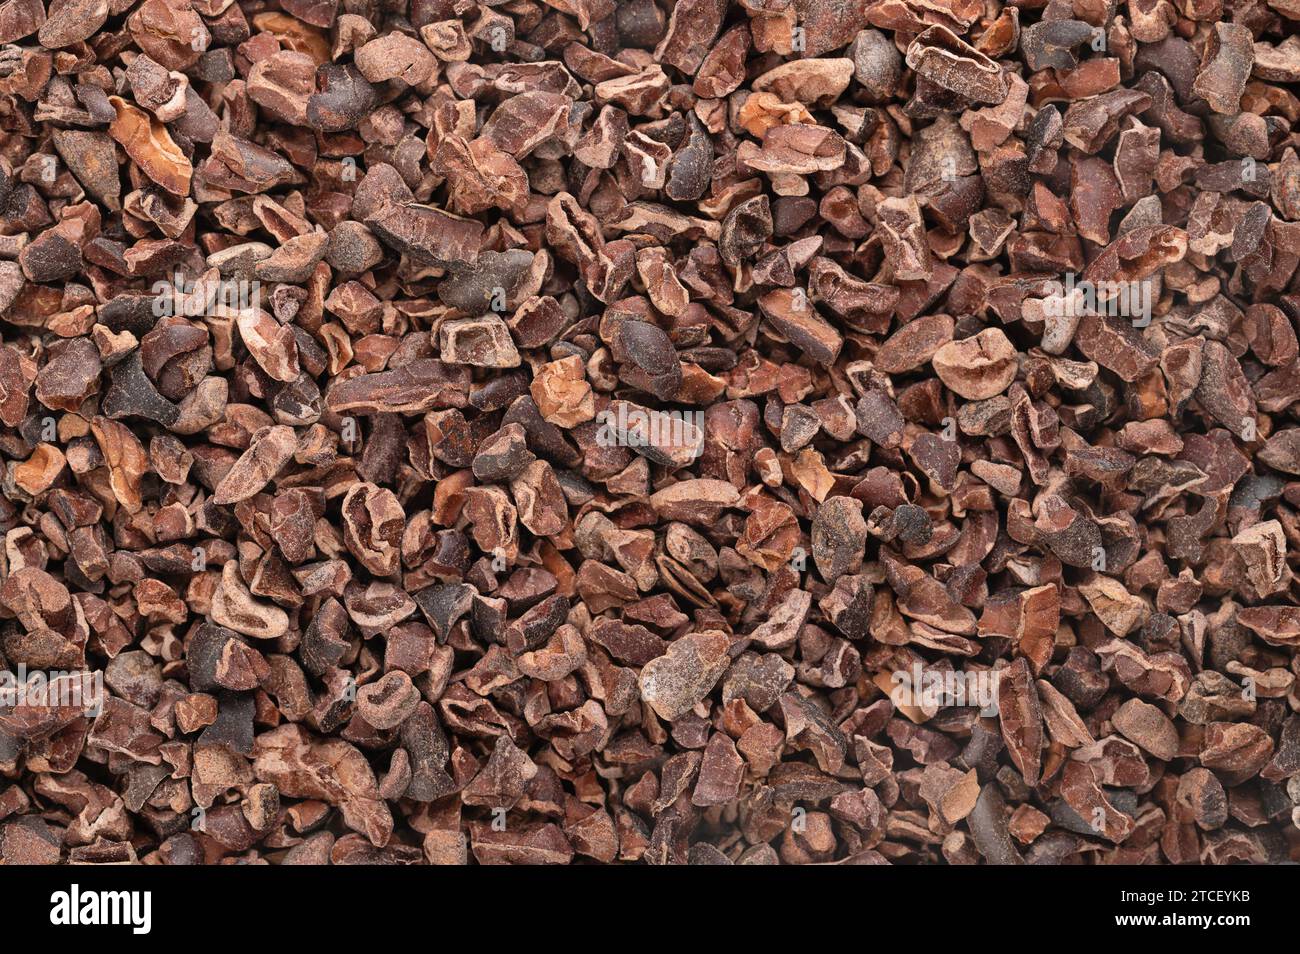 NIBS cacao. Fond avec des grains fermentés séchés broyés de fèves de cacao, des graines de cacao Theobroma, généralement transformés en chocolat. Banque D'Images